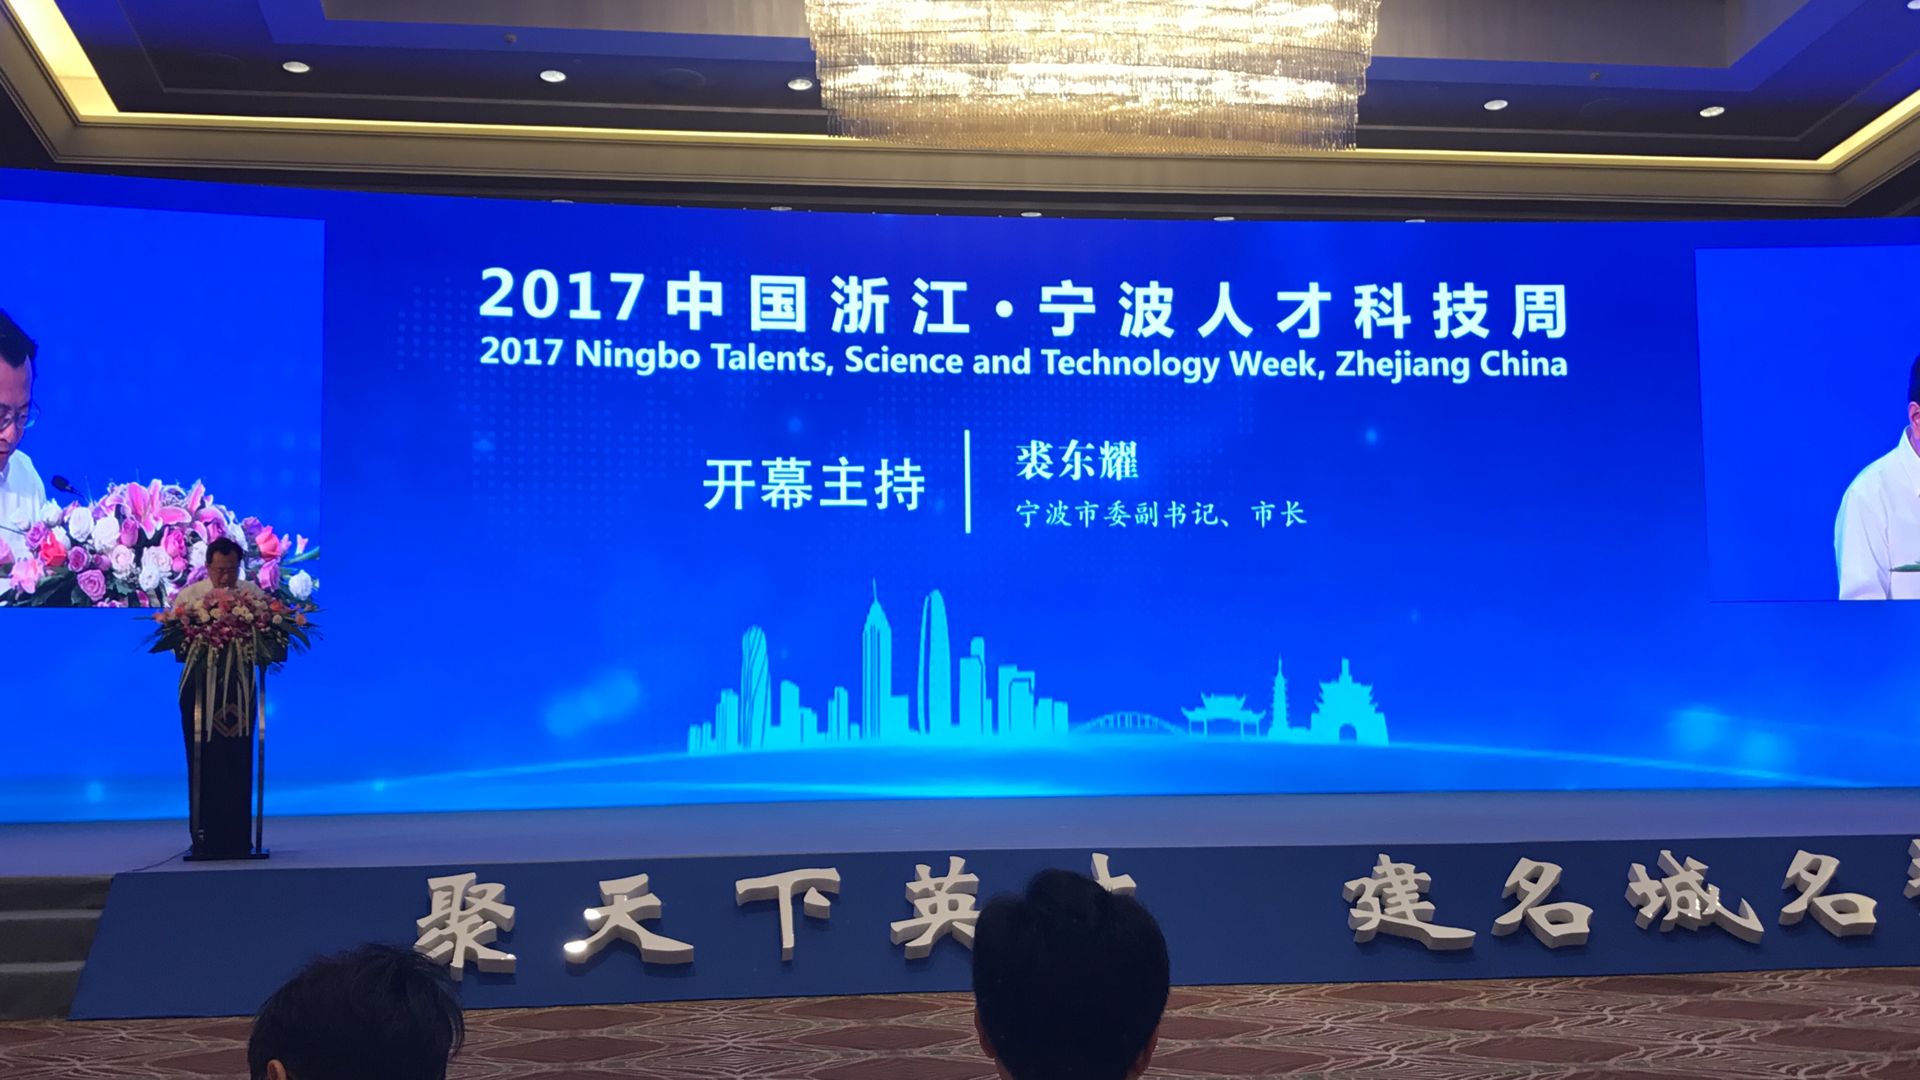 图文直播:2017宁波人才科技周